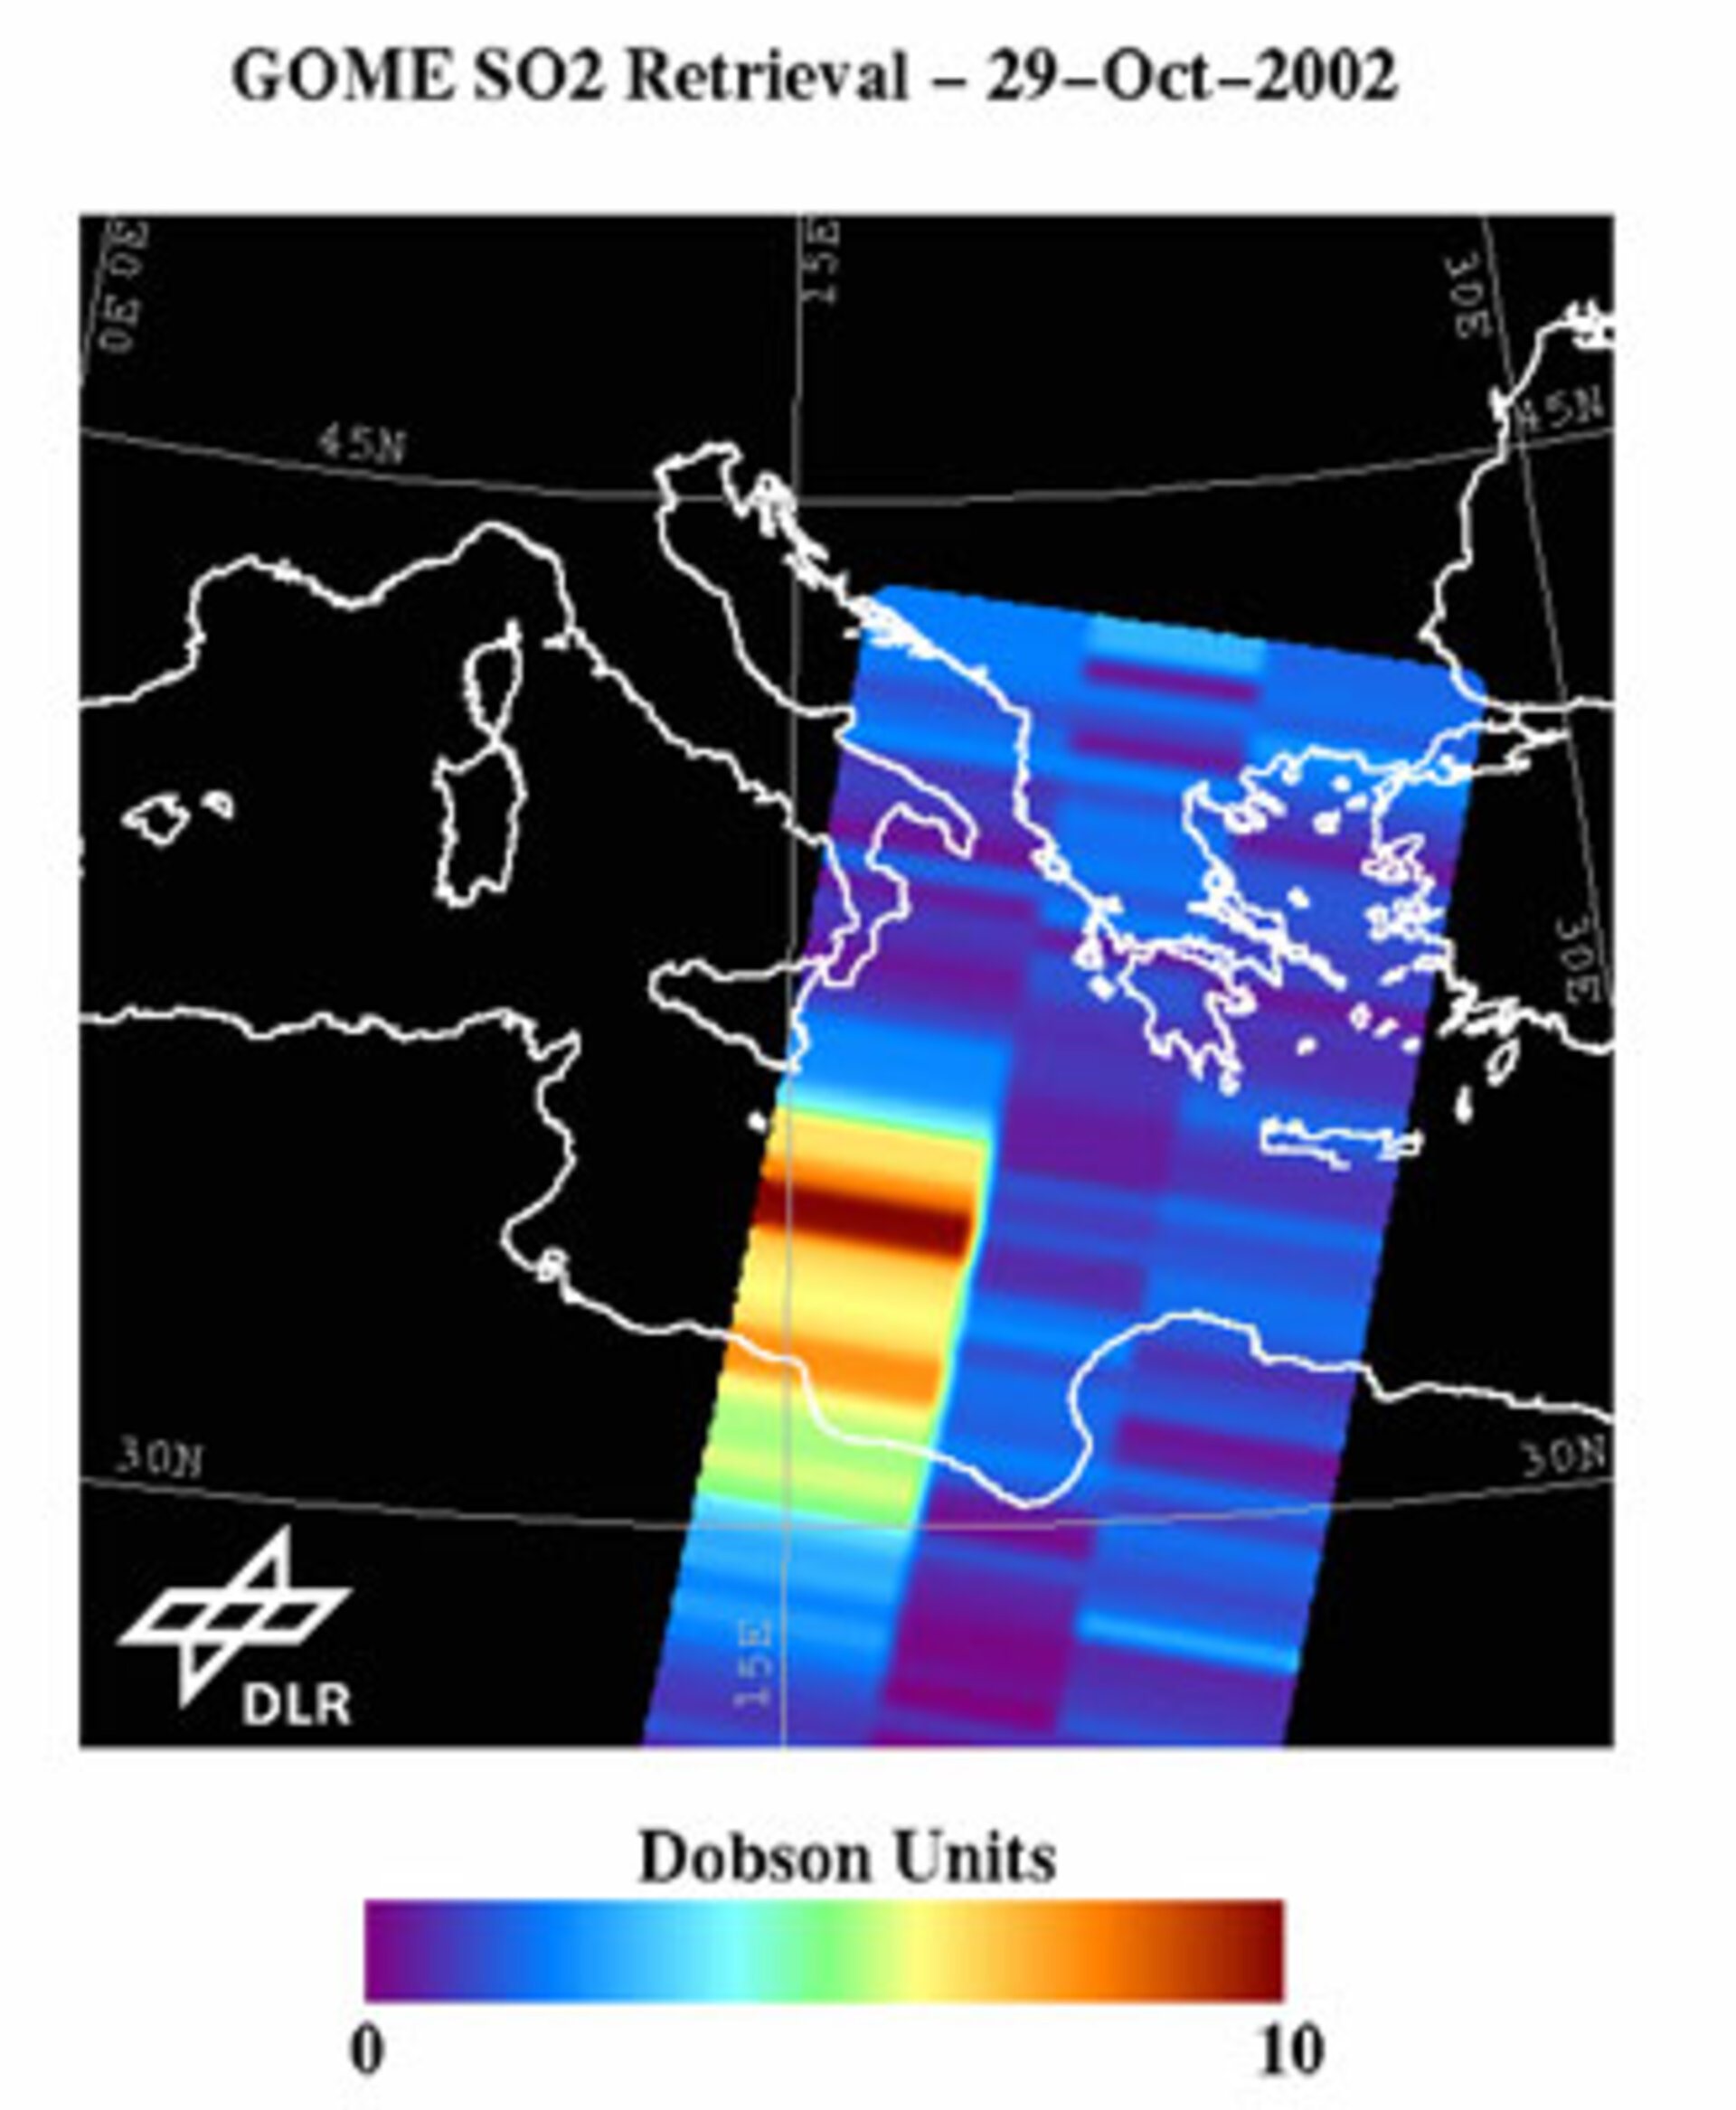 GOME-Daten belegen zwanzigfach erhöhte Schwefeldioxid-Belastung der Atmosphäre durch den Ätna-Ausbruch